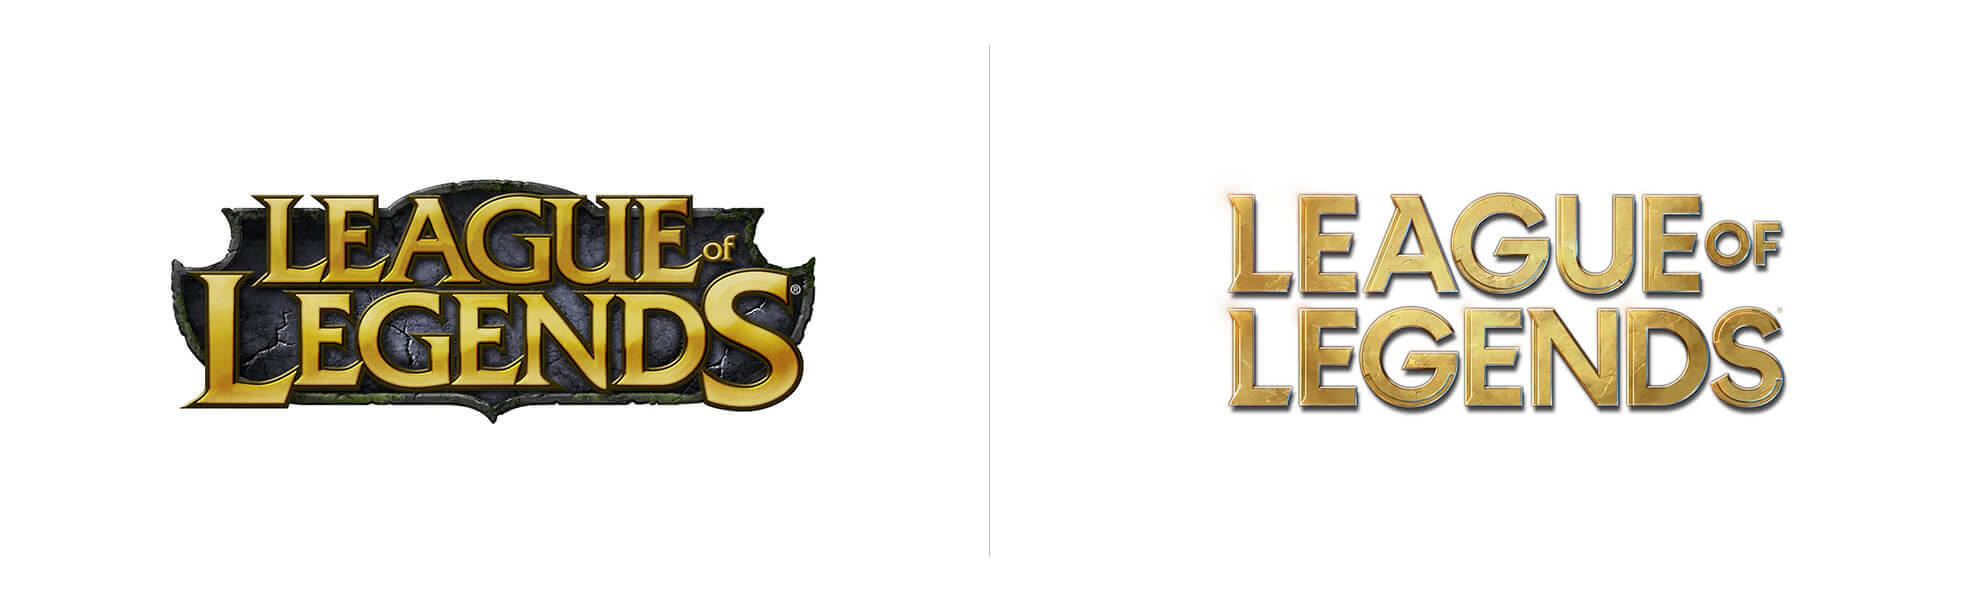 League of Legends z nowum logo